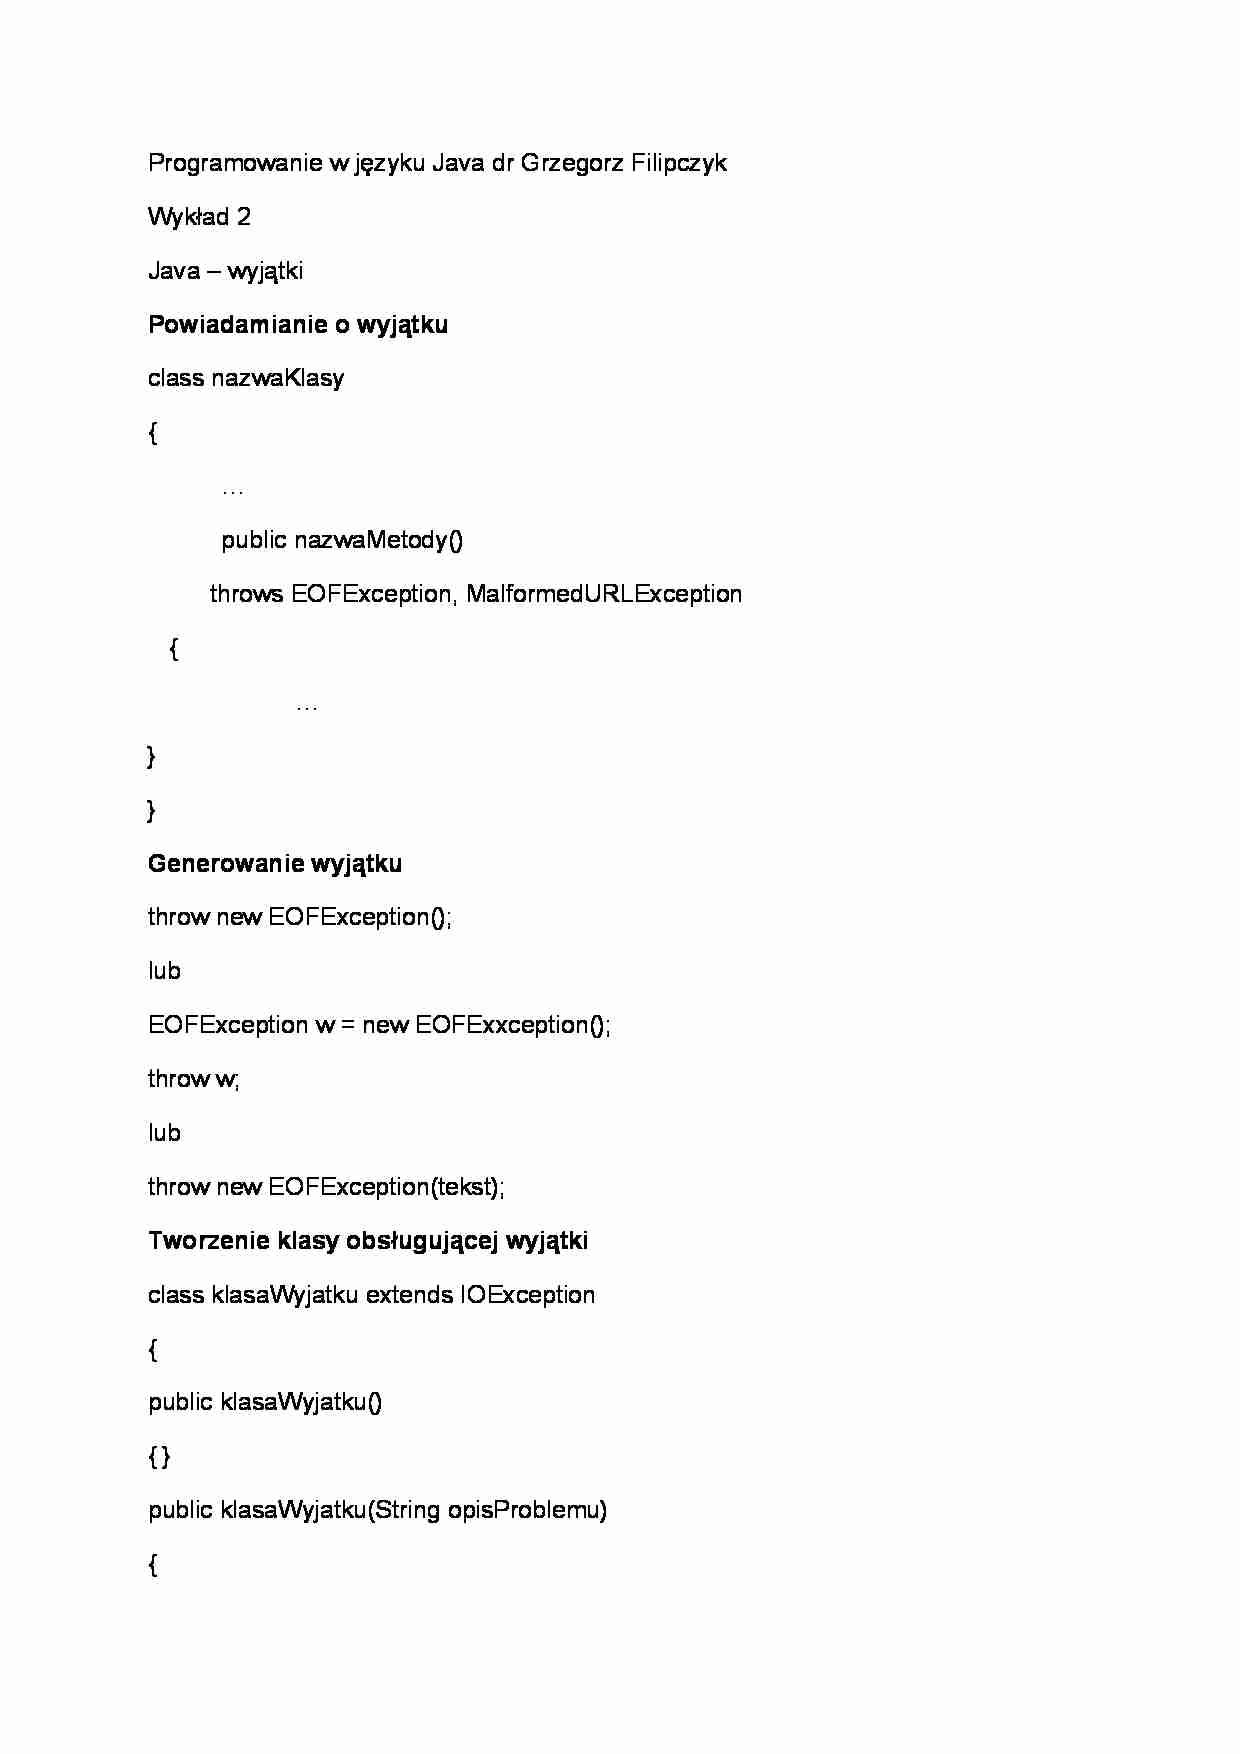 Wykład - Java - wyjątki, Powiadamianie o wyjątku - strona 1